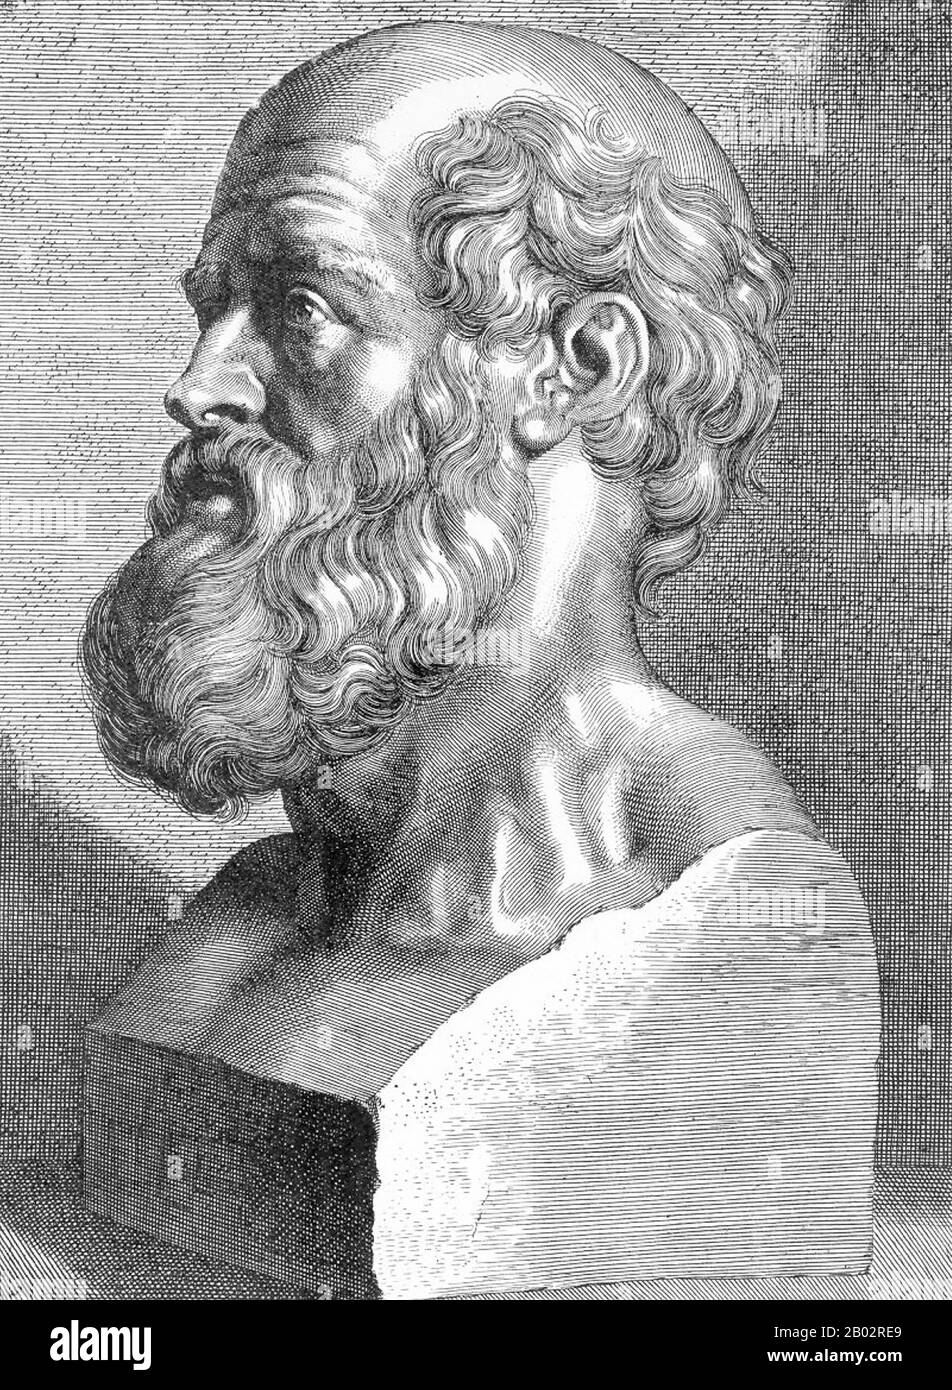 Hippokrates von Kos ( c 460 - ca. 370 v. u. z.), war ein griechischer Mediziner des Alters Perikles (Klassisches Griechenland) und gilt als eine der herausragendsten Persönlichkeiten in der Geschichte der Medizin. Er wird als "Vater der westlichen Medizin" in Anerkennung seiner dauerhaften Beiträge auf dem Gebiet als Gründer der hippokratischen Schule für Medizin bezeichnet. Diese intellektuelle Schule revolutionierte die Medizin im antiken Griechenland und etablierte sie als Disziplin, die sich von anderen Bereichen unterscheidet, mit denen sie traditionell assoziiert war (Theurgie und Philosophie) und so die Medizin als Beruf etablierte. Stockfoto